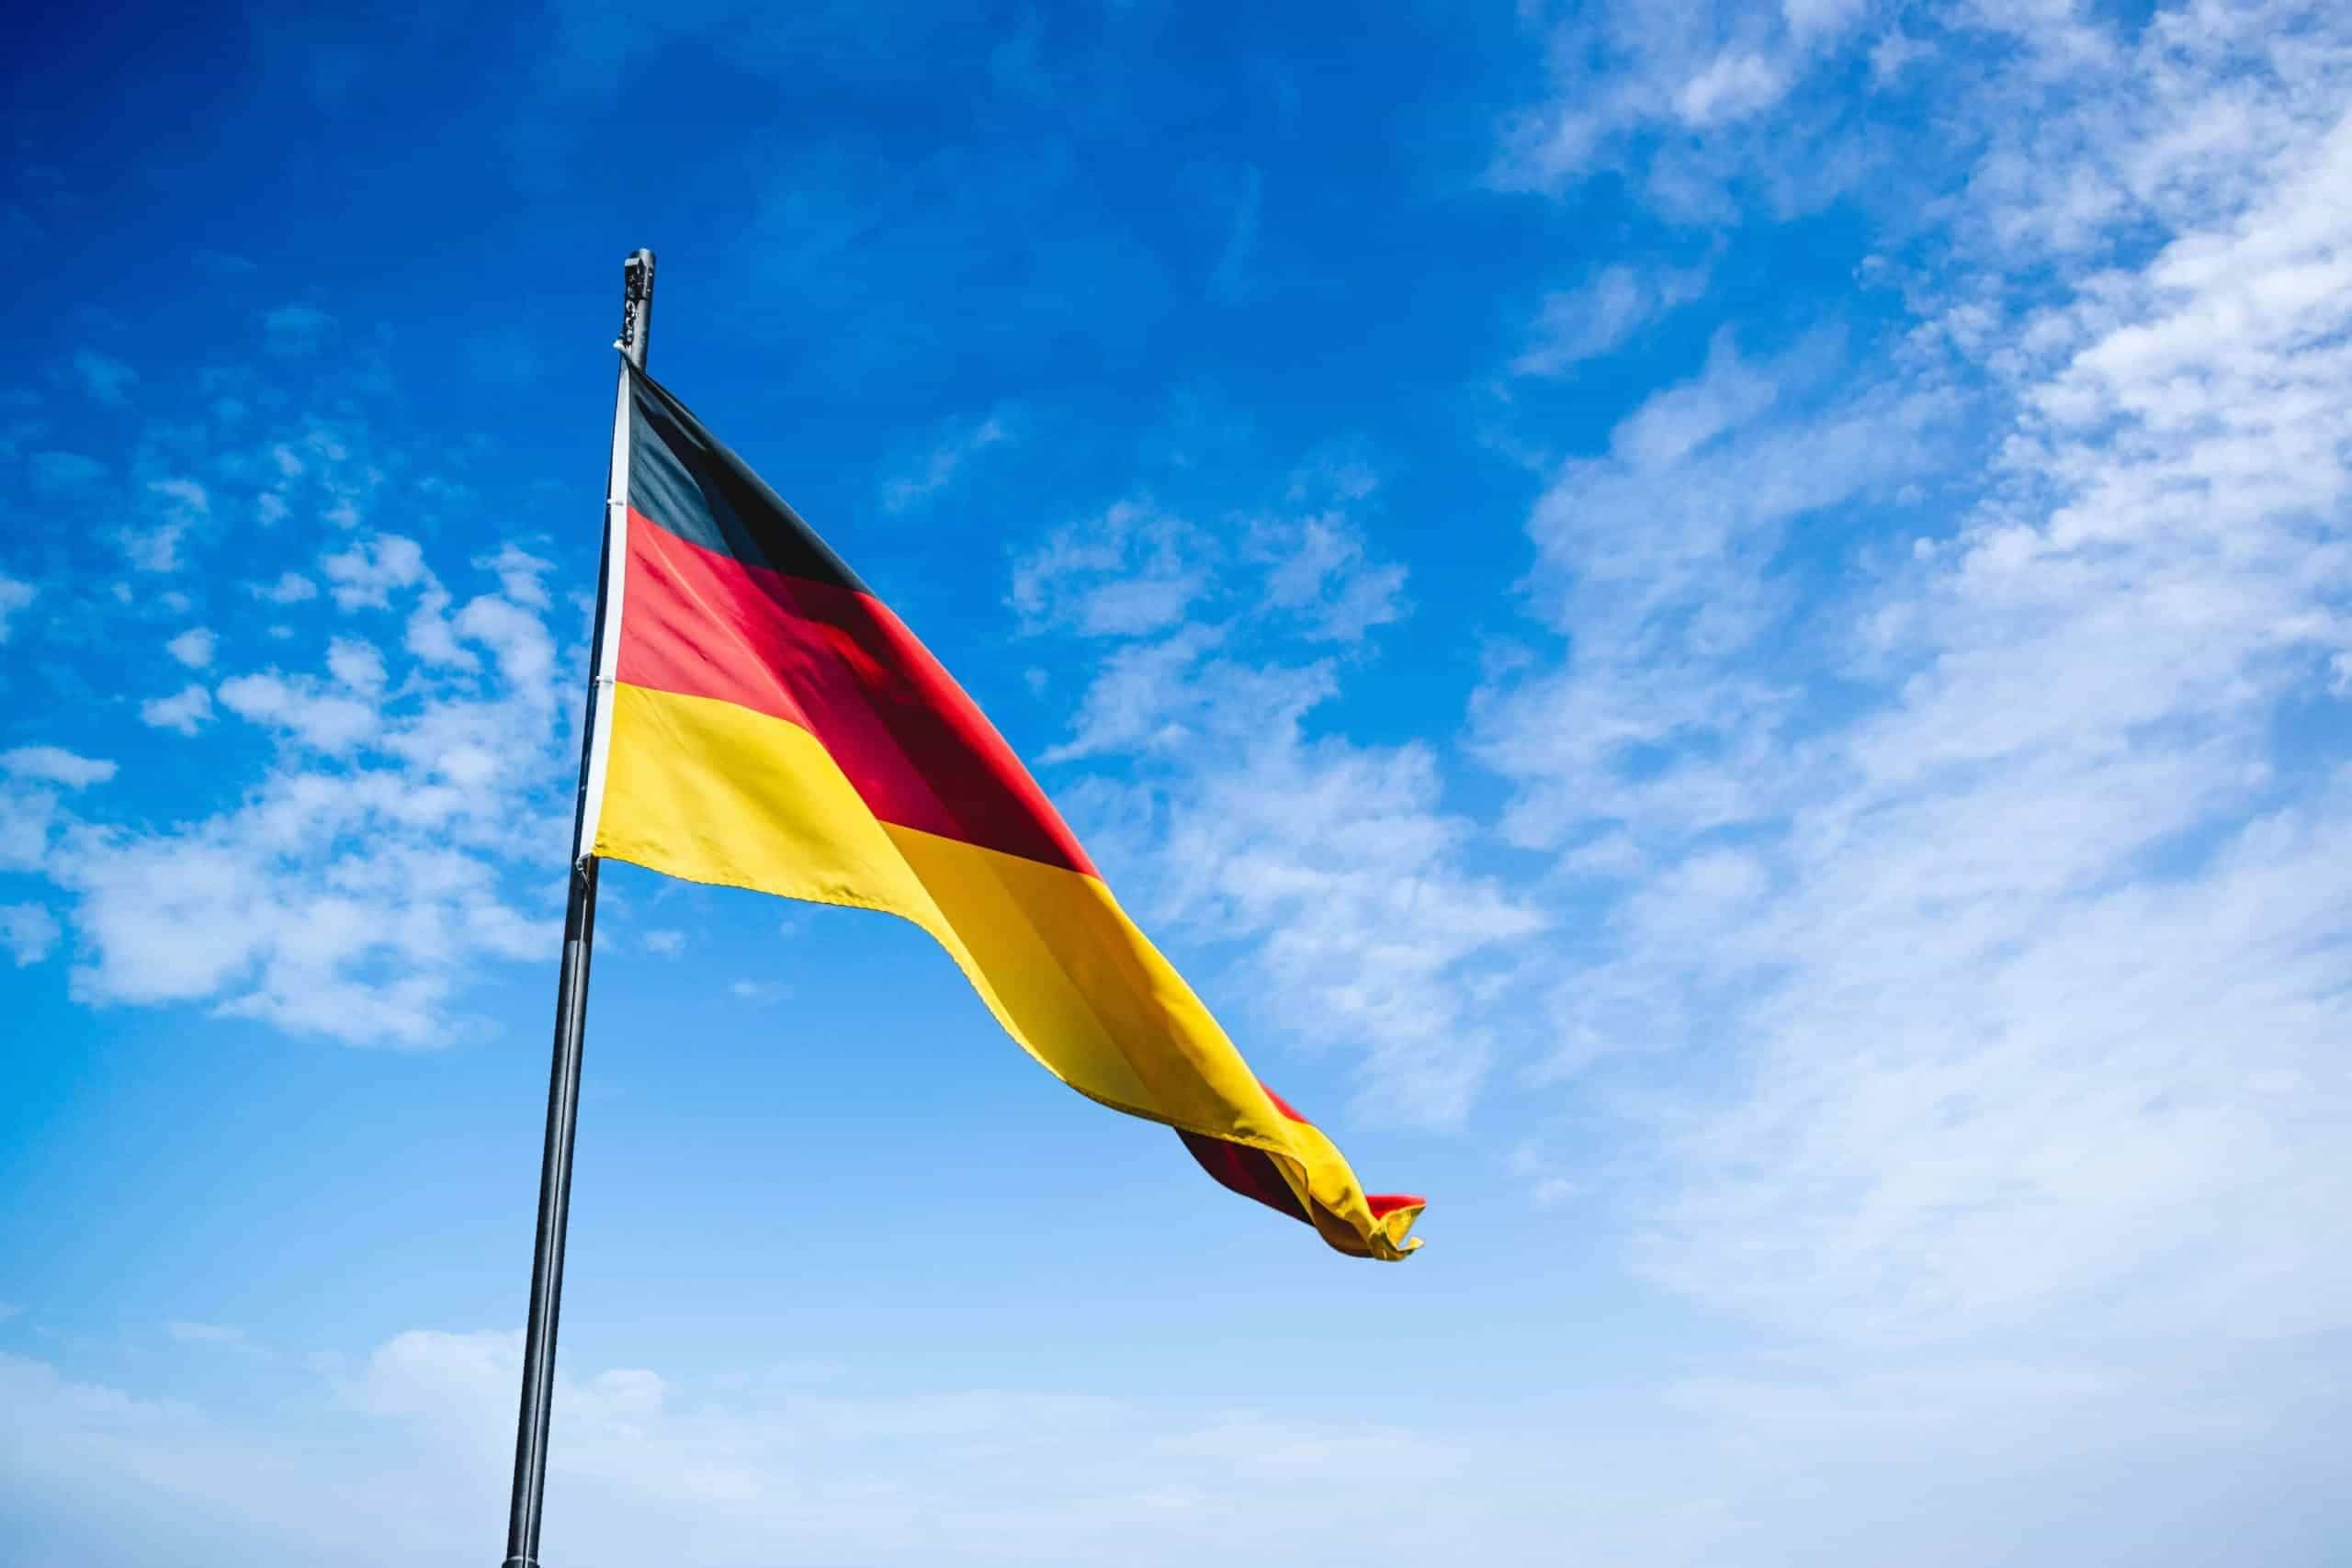 Die deutsche Nationalflagge weht an einem Mast an einem strahlend blauen Tag im Wind.